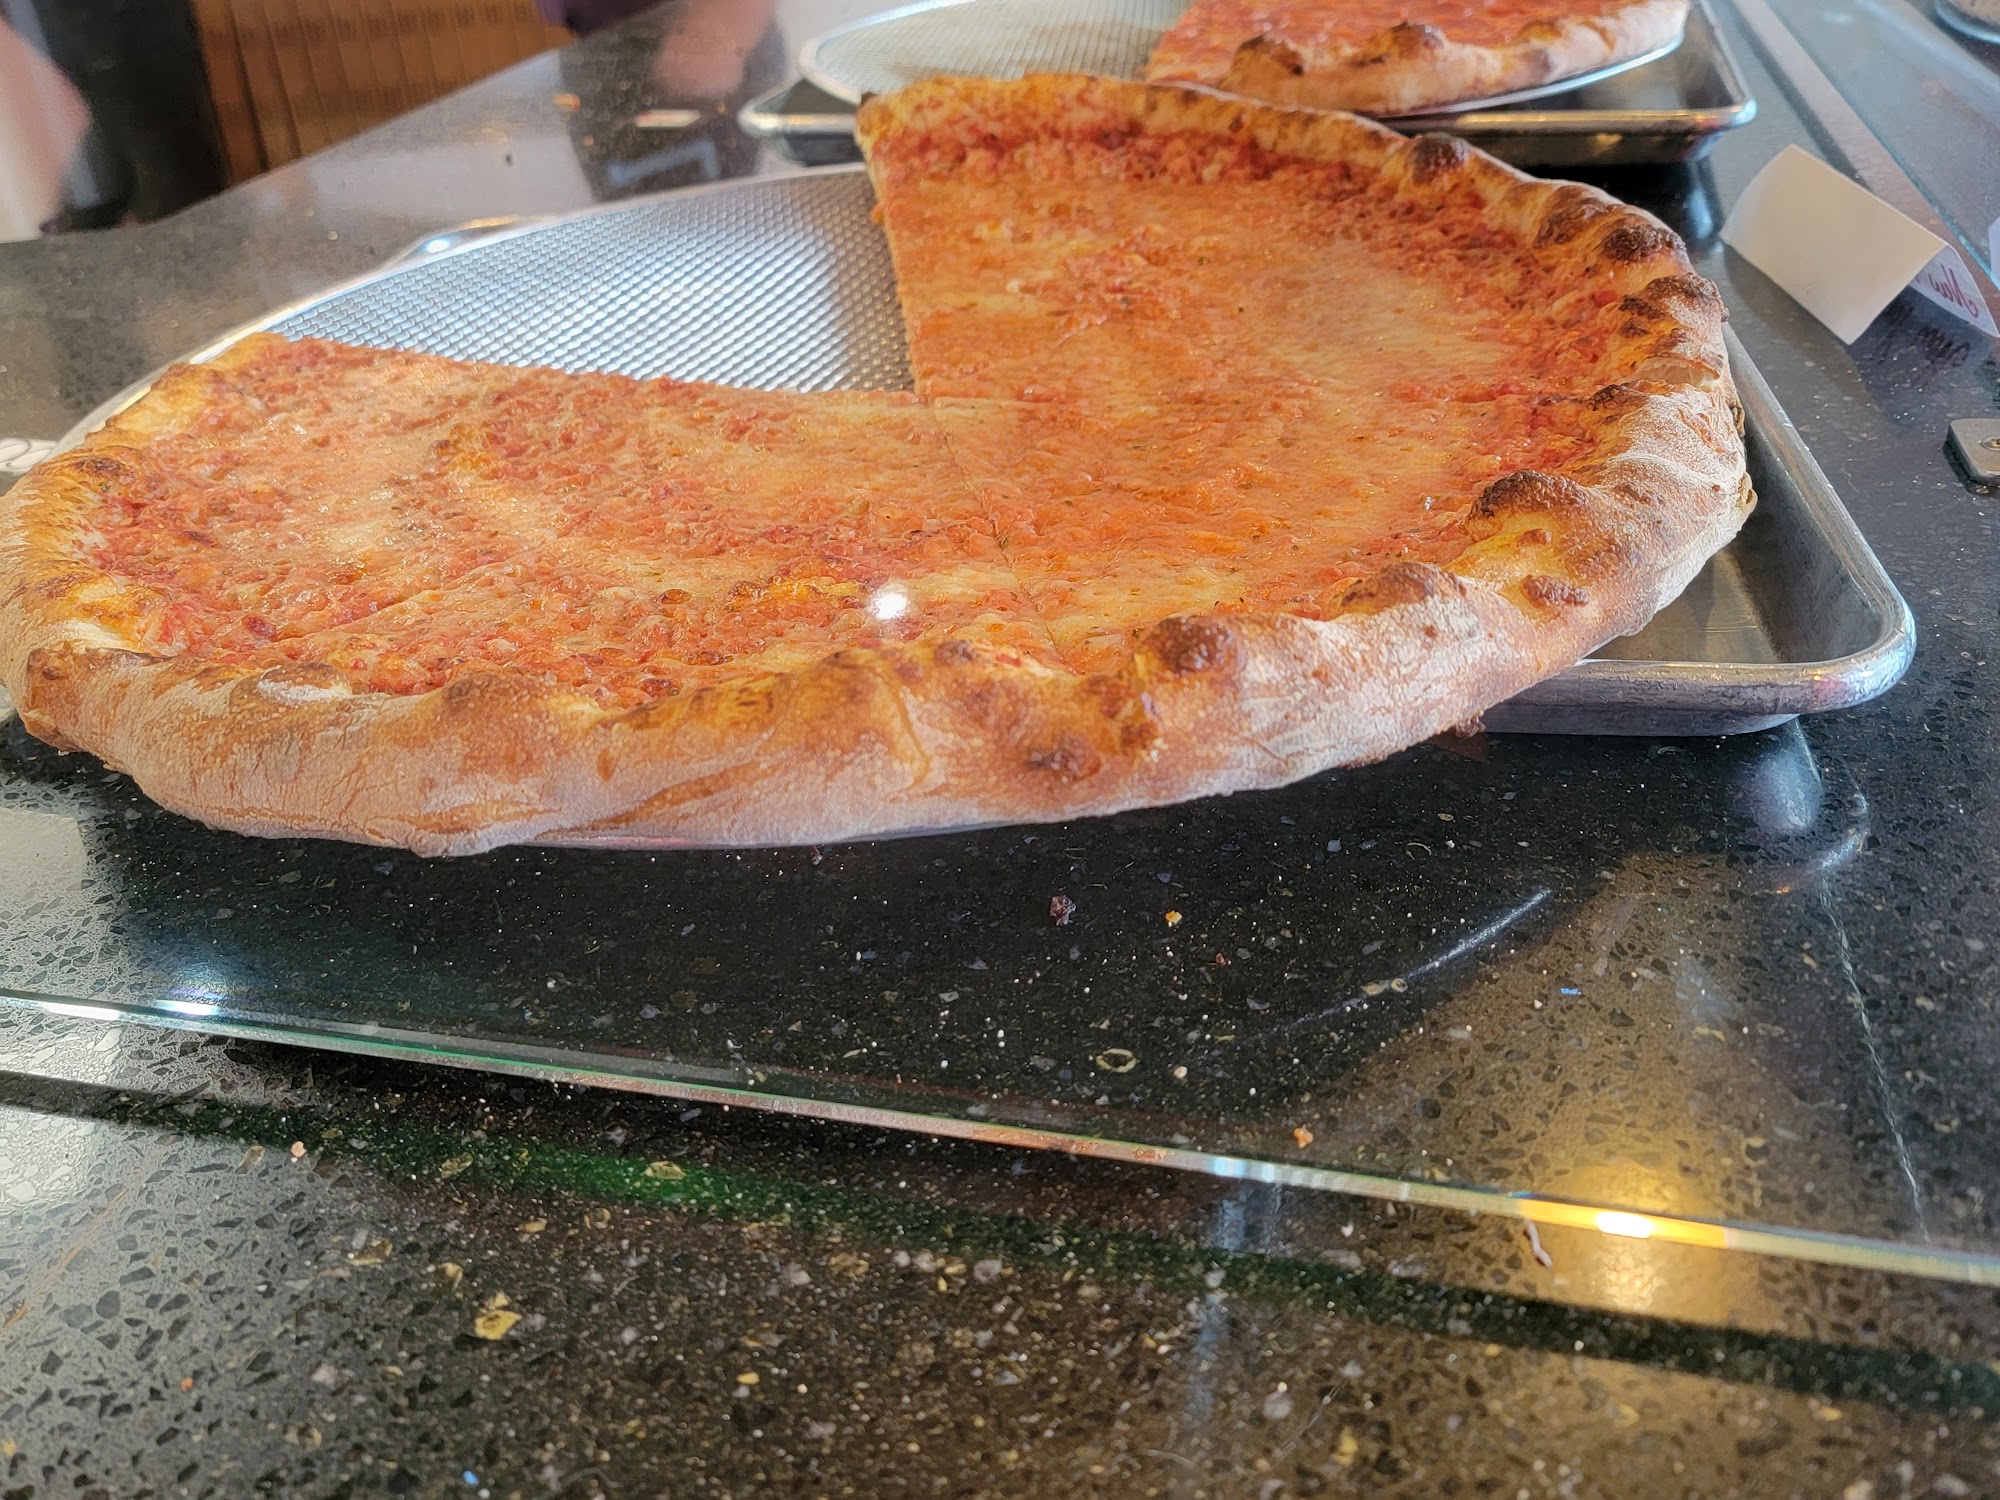 Parma's Pizzeria